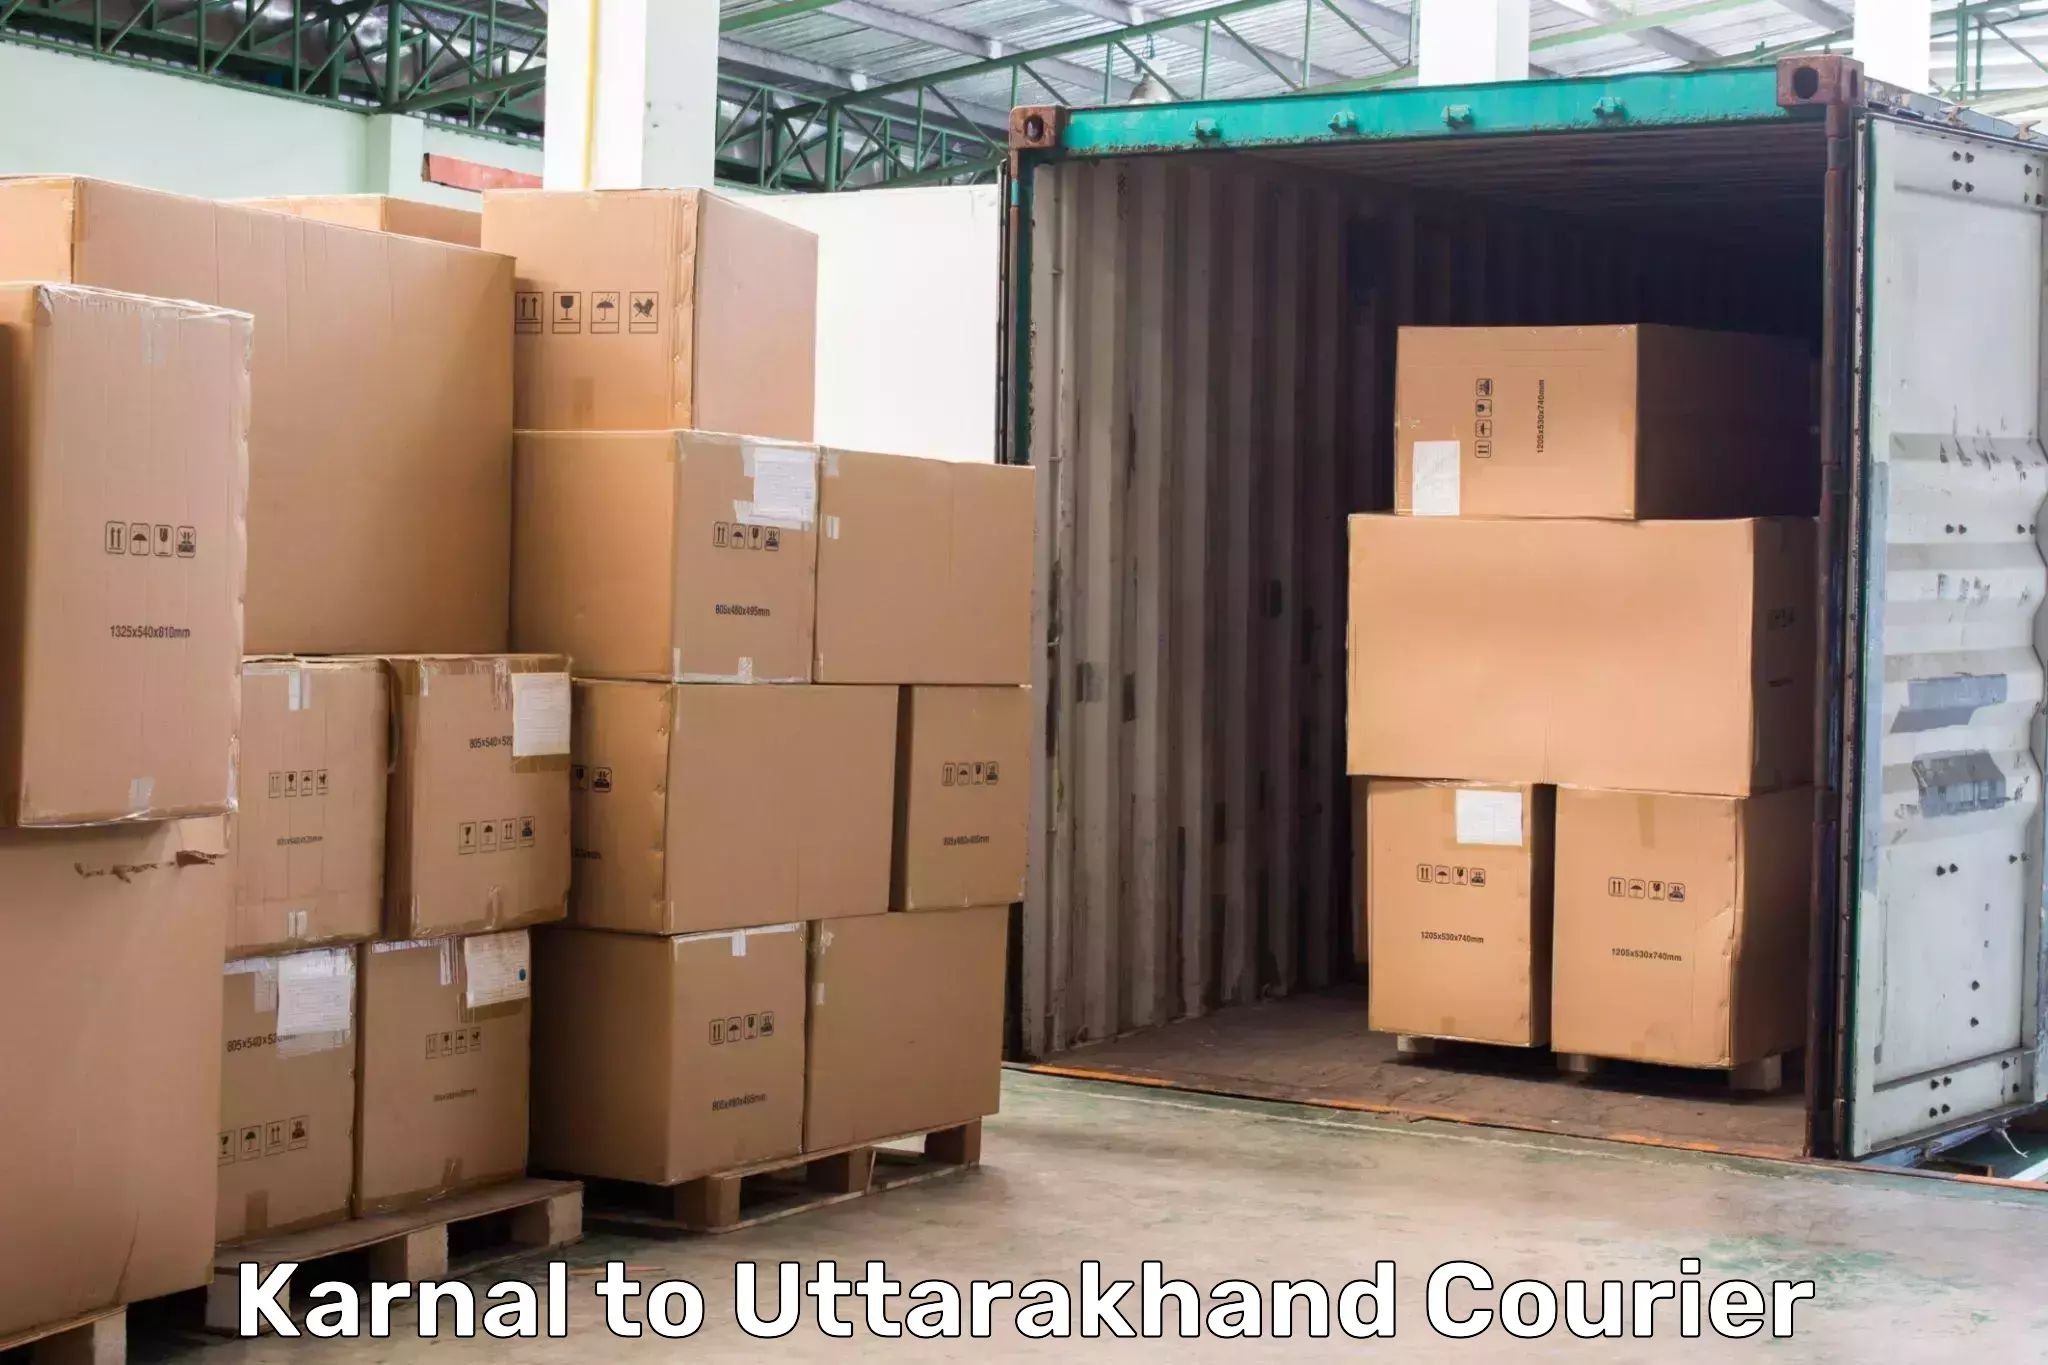 Cash on delivery service Karnal to Udham Singh Nagar